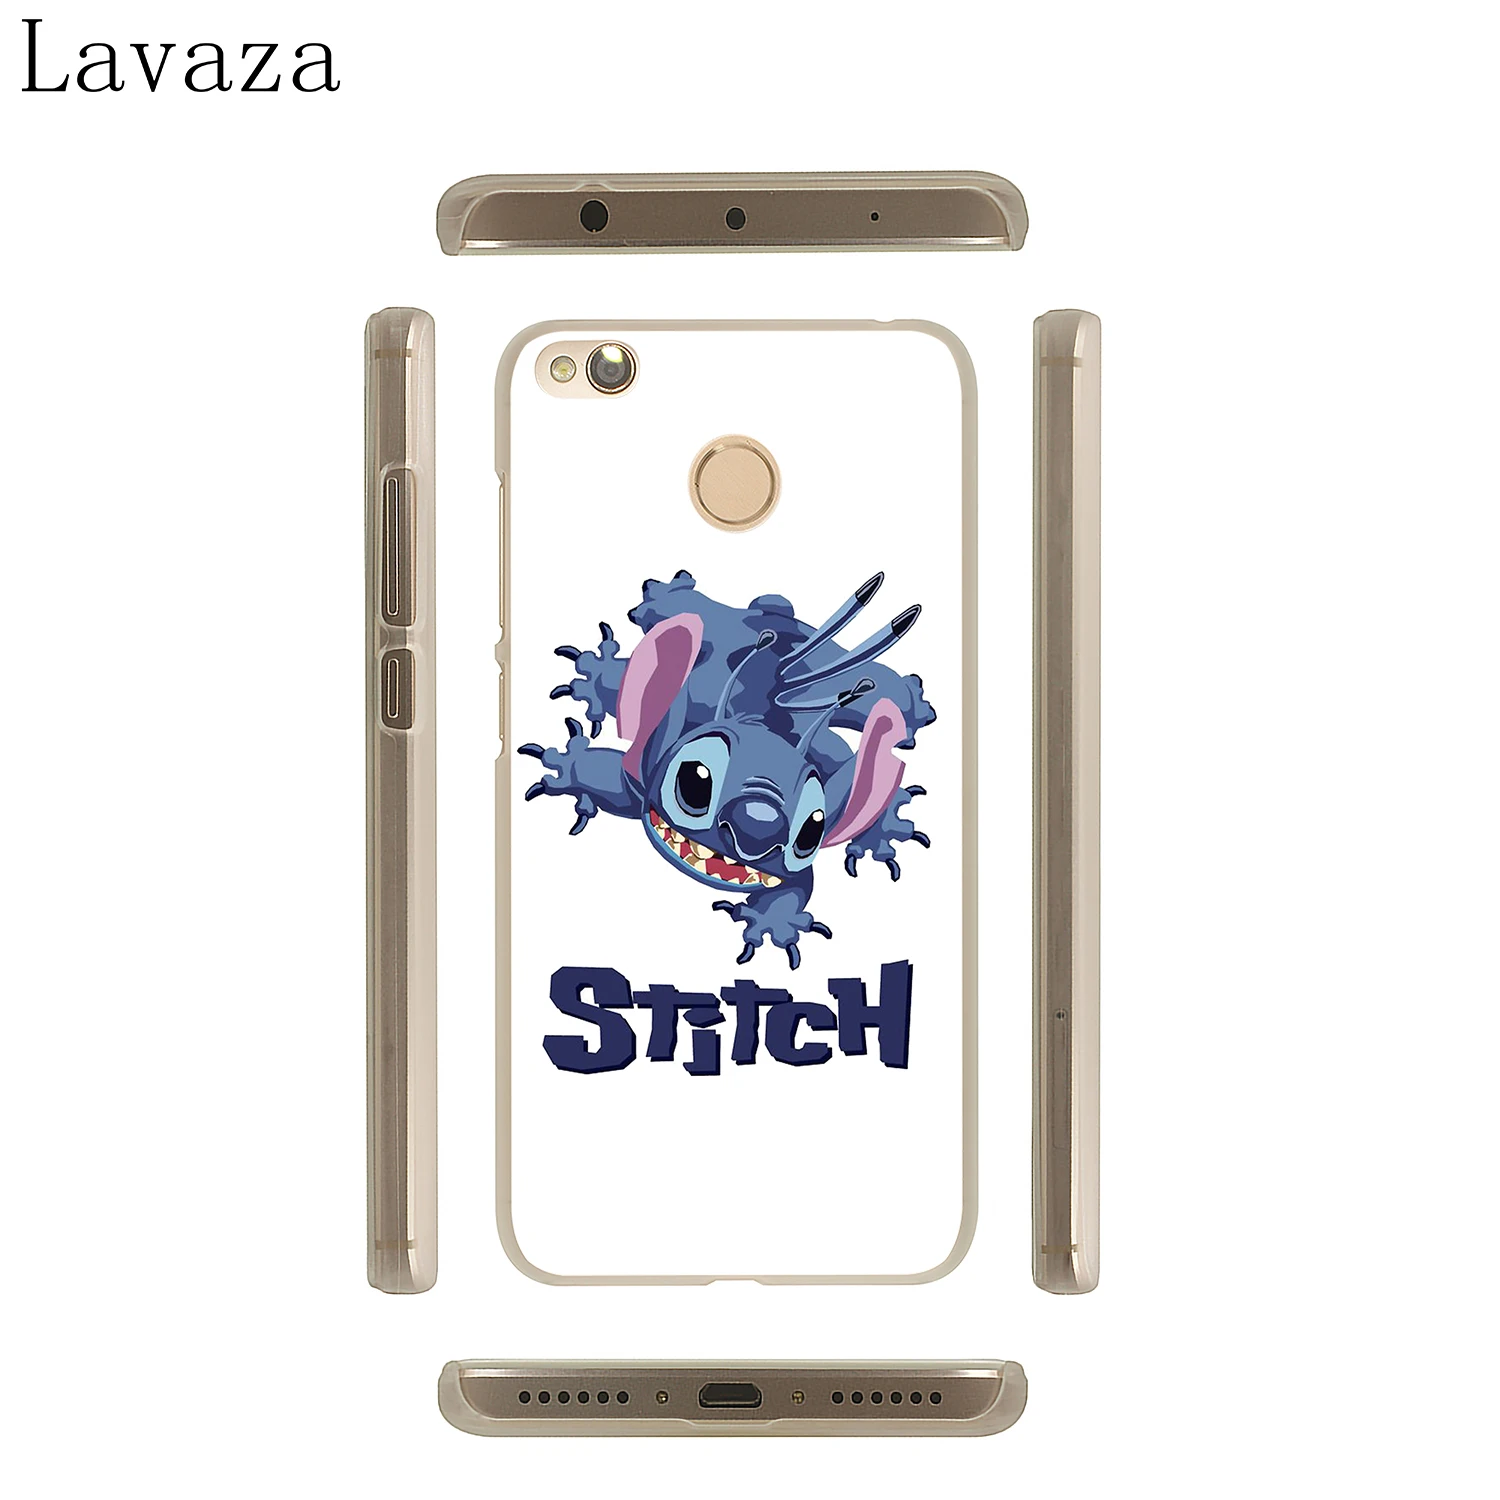 Lavaza стильная футболка с изображением персонажей видеоигр крестиком чехол для телефона чехол для Xiaomi Mi 9 9T A3 Pro CC9 CC9E 8 SE A2 Lite A1 pocophone f1 6 6X 5S 5X макс 3